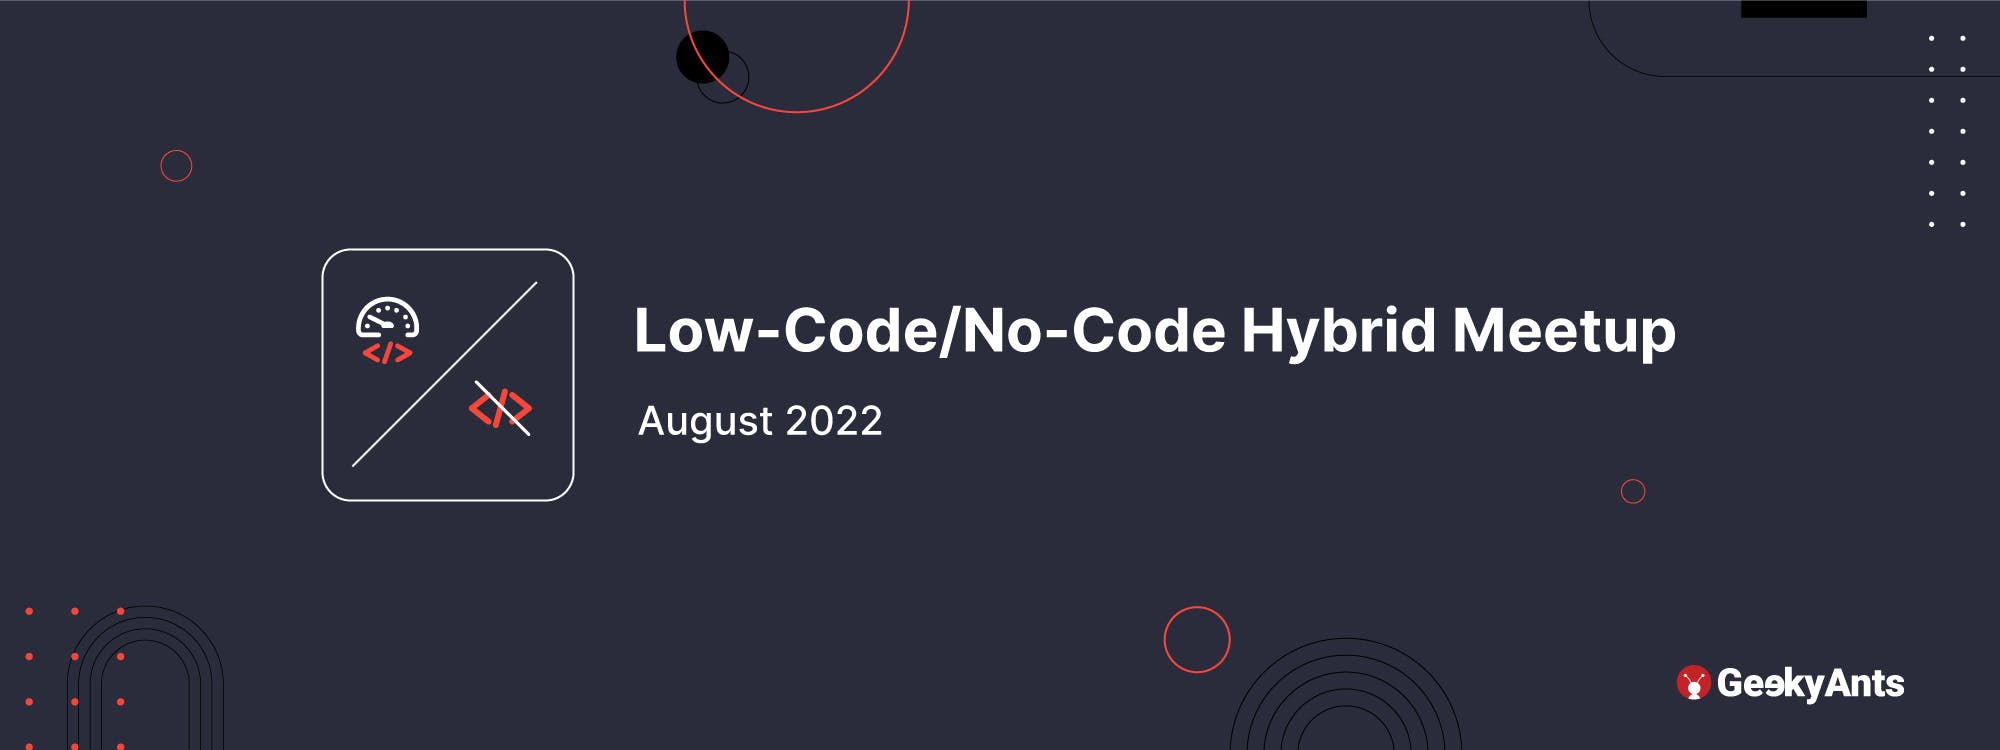 Low-Code/No-Code Hybrid Meetup @ GeekyAnts, August 2022